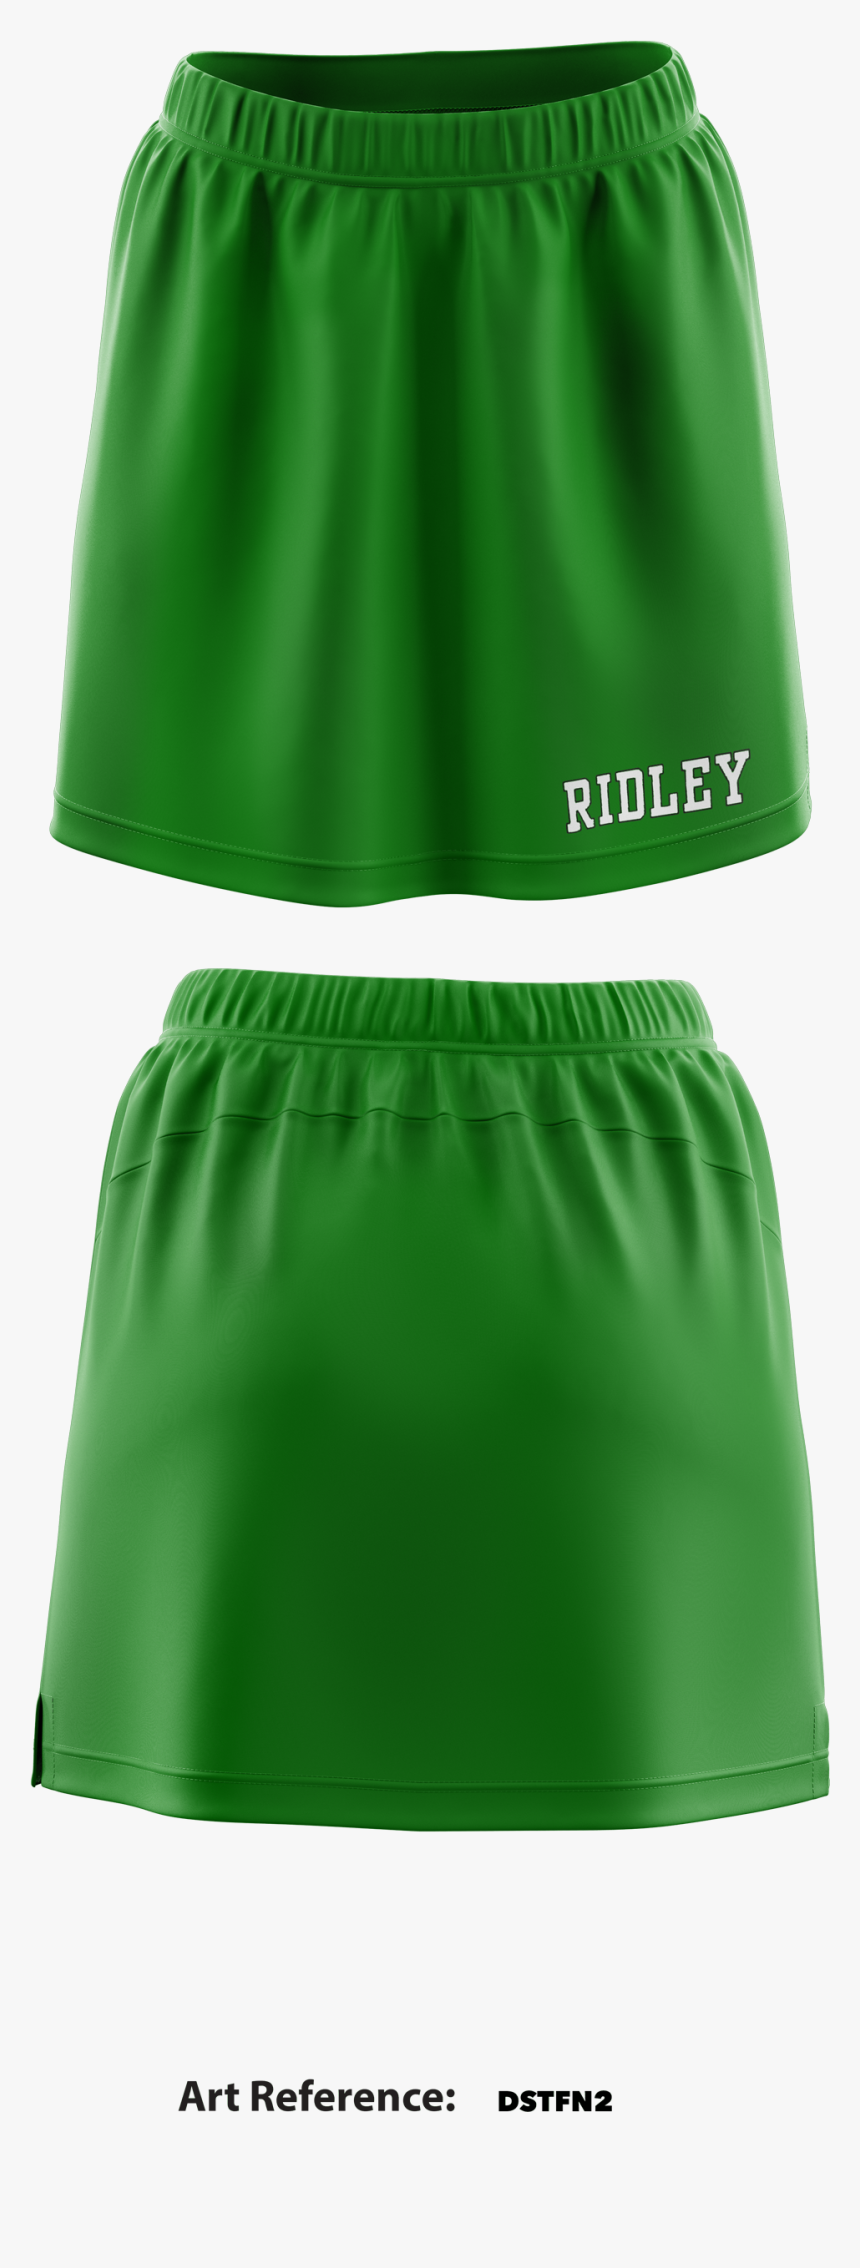 Ridley Tennis Tennis Skirt - Miniskirt, HD Png Download, Free Download